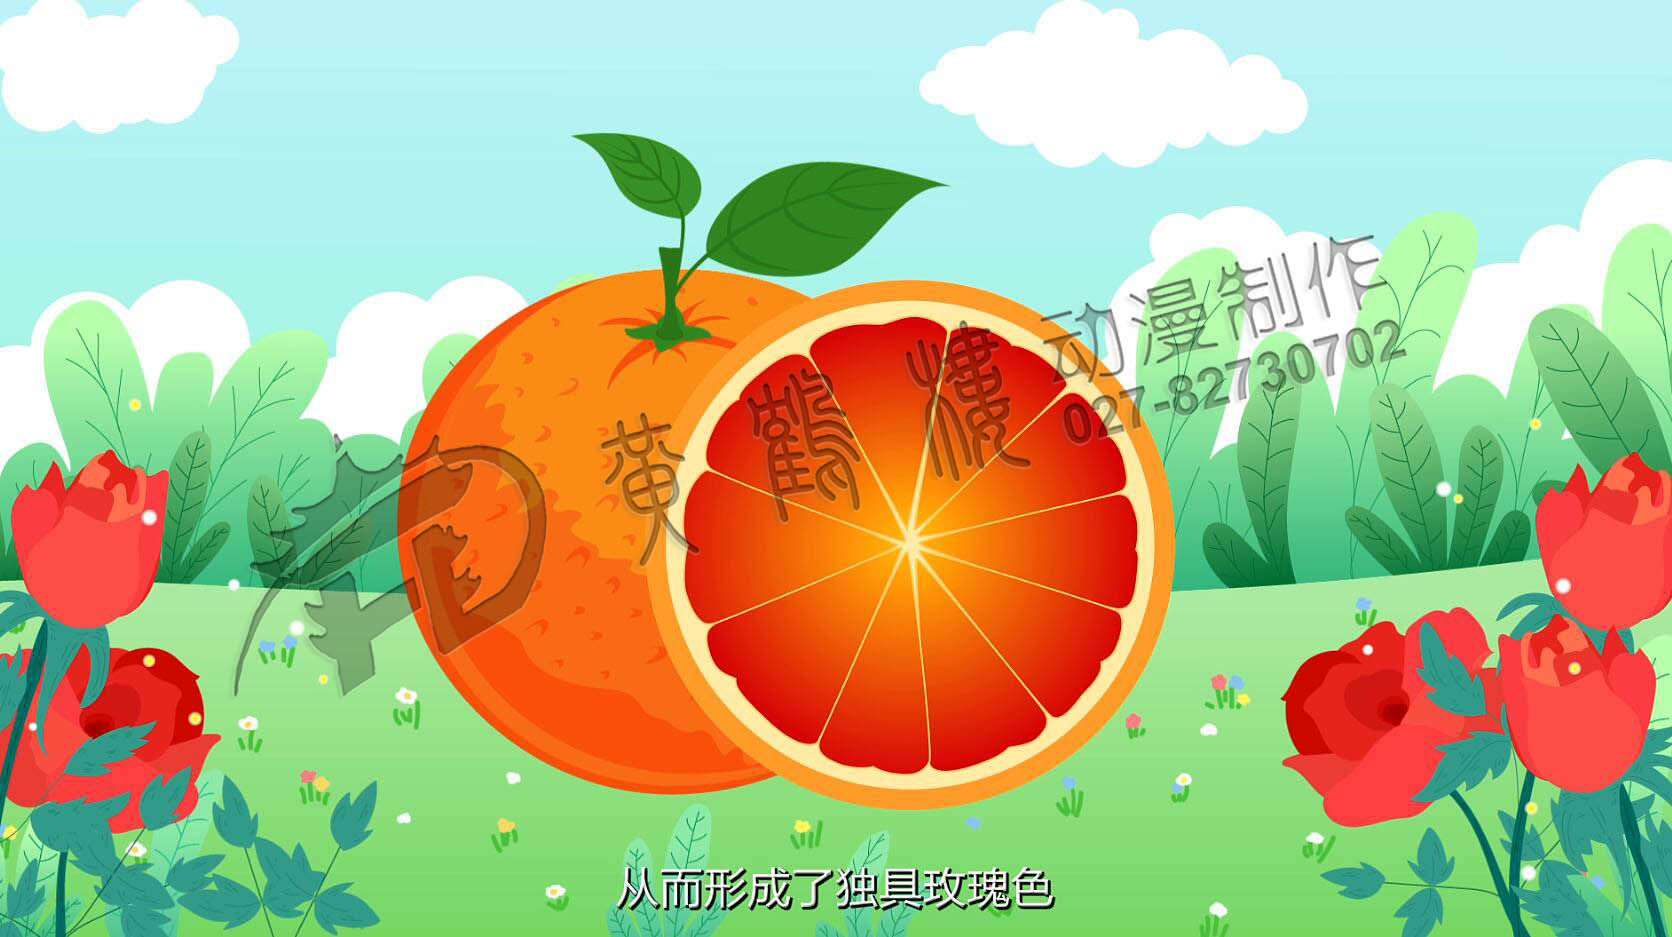 三峡恋橙场景设计.jpg